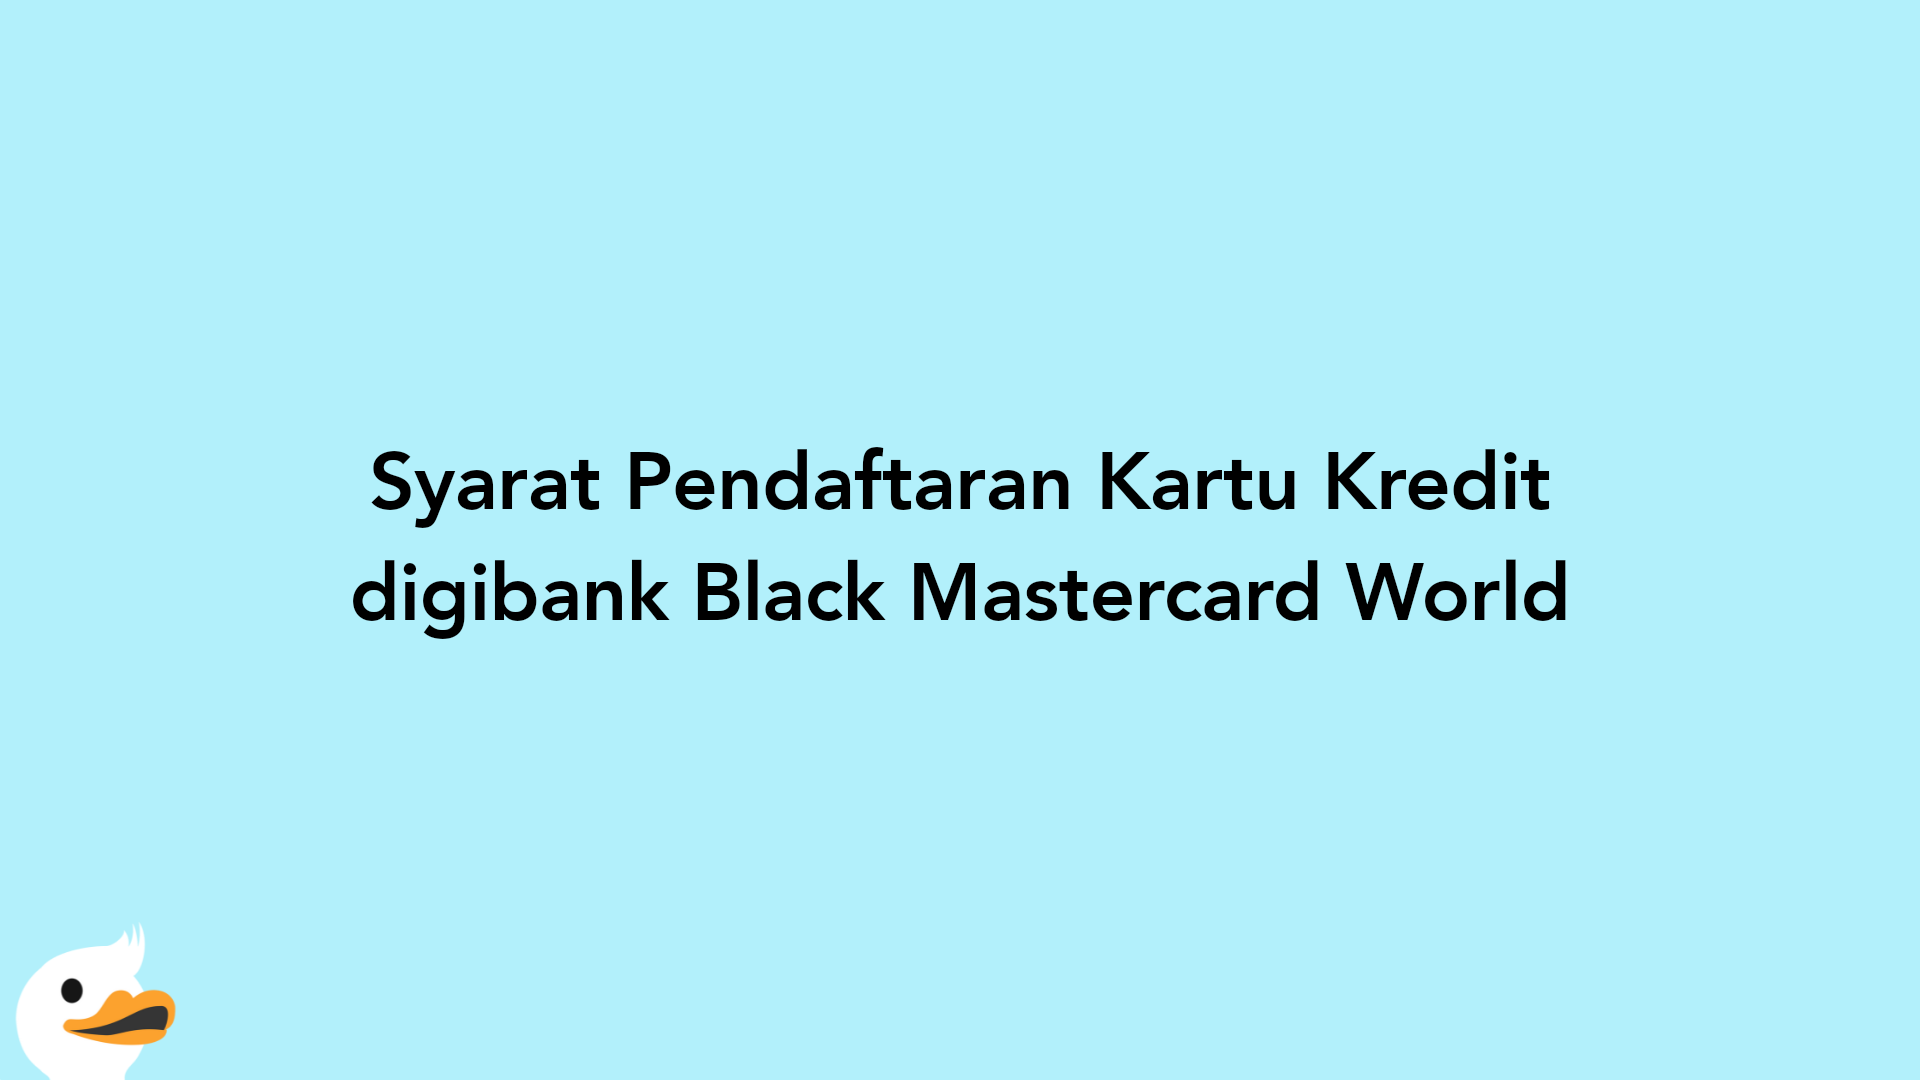 Syarat Pendaftaran Kartu Kredit digibank Black Mastercard World